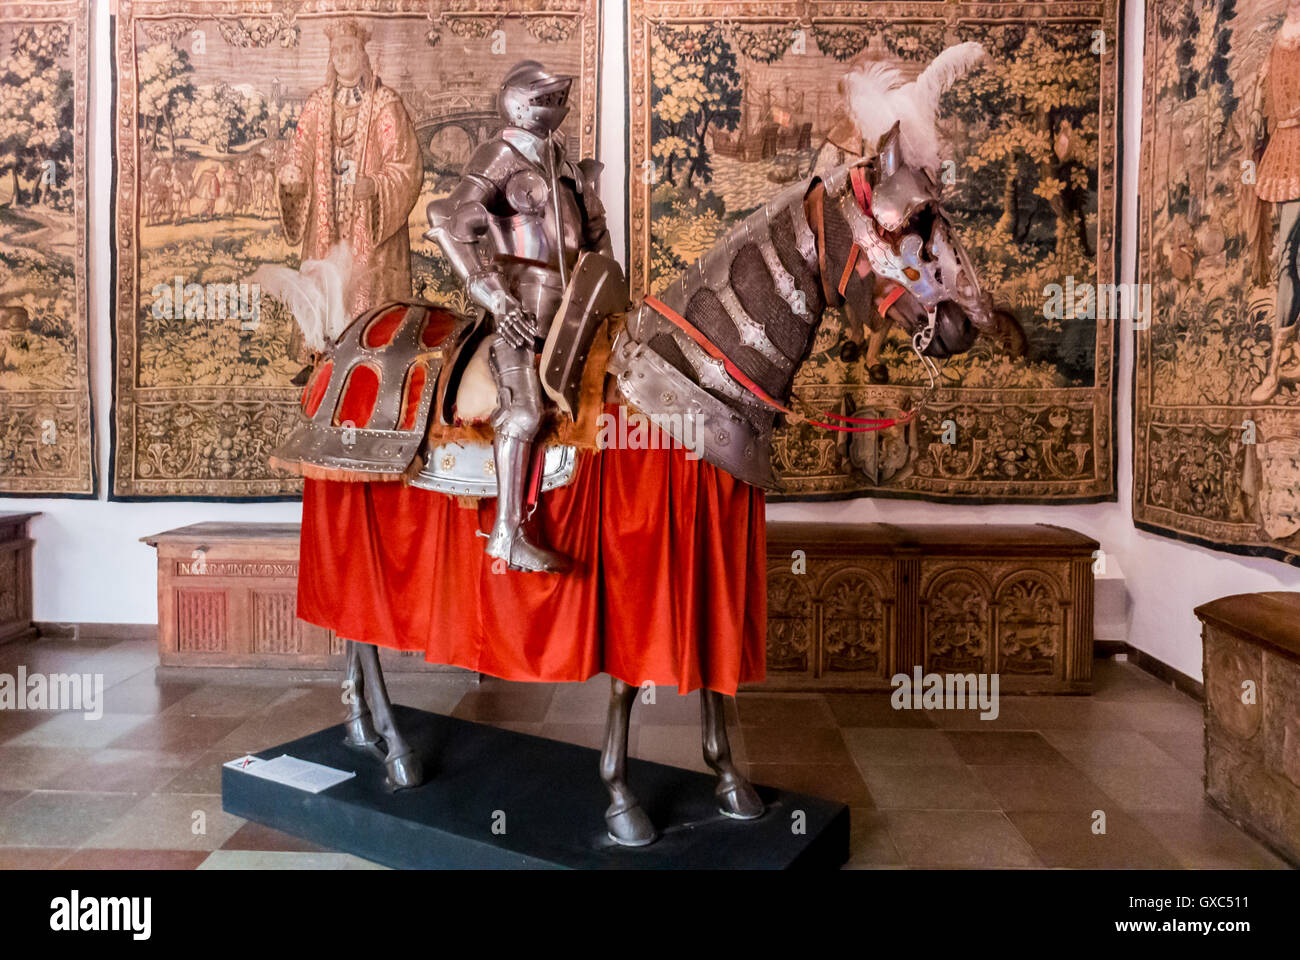 Kopenhagen, Dänemark, innen, das Nationalmuseum Nationalmuseet, Mittelalter, volle Rüstung, Pferd und Mensch, 16c Stockfoto